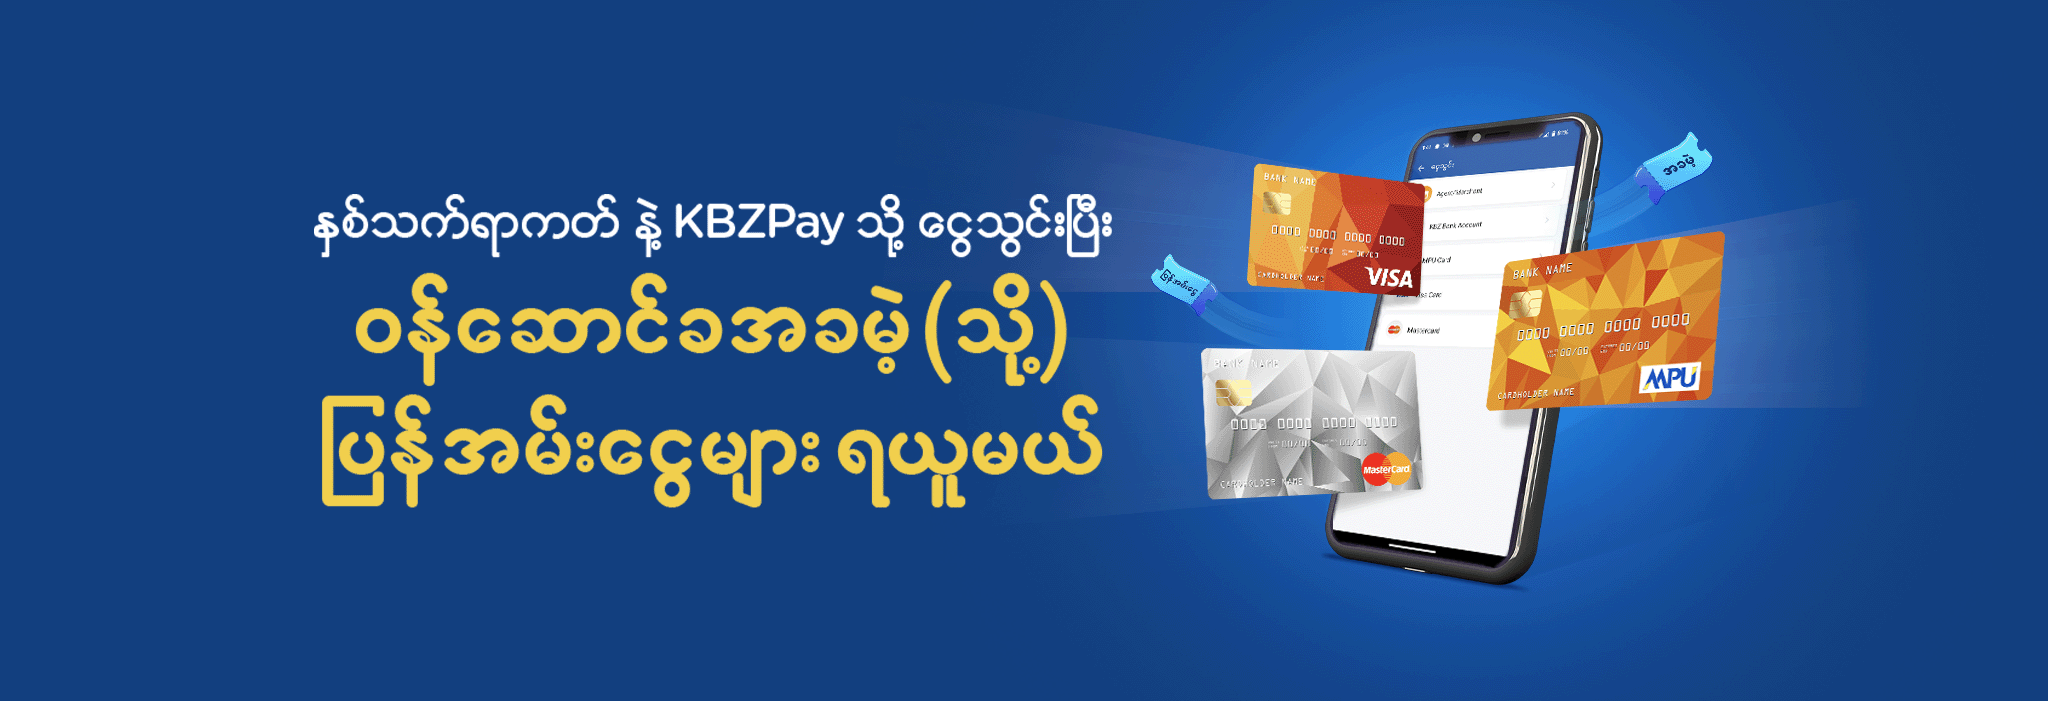 KBZPay Centers in Myanmar